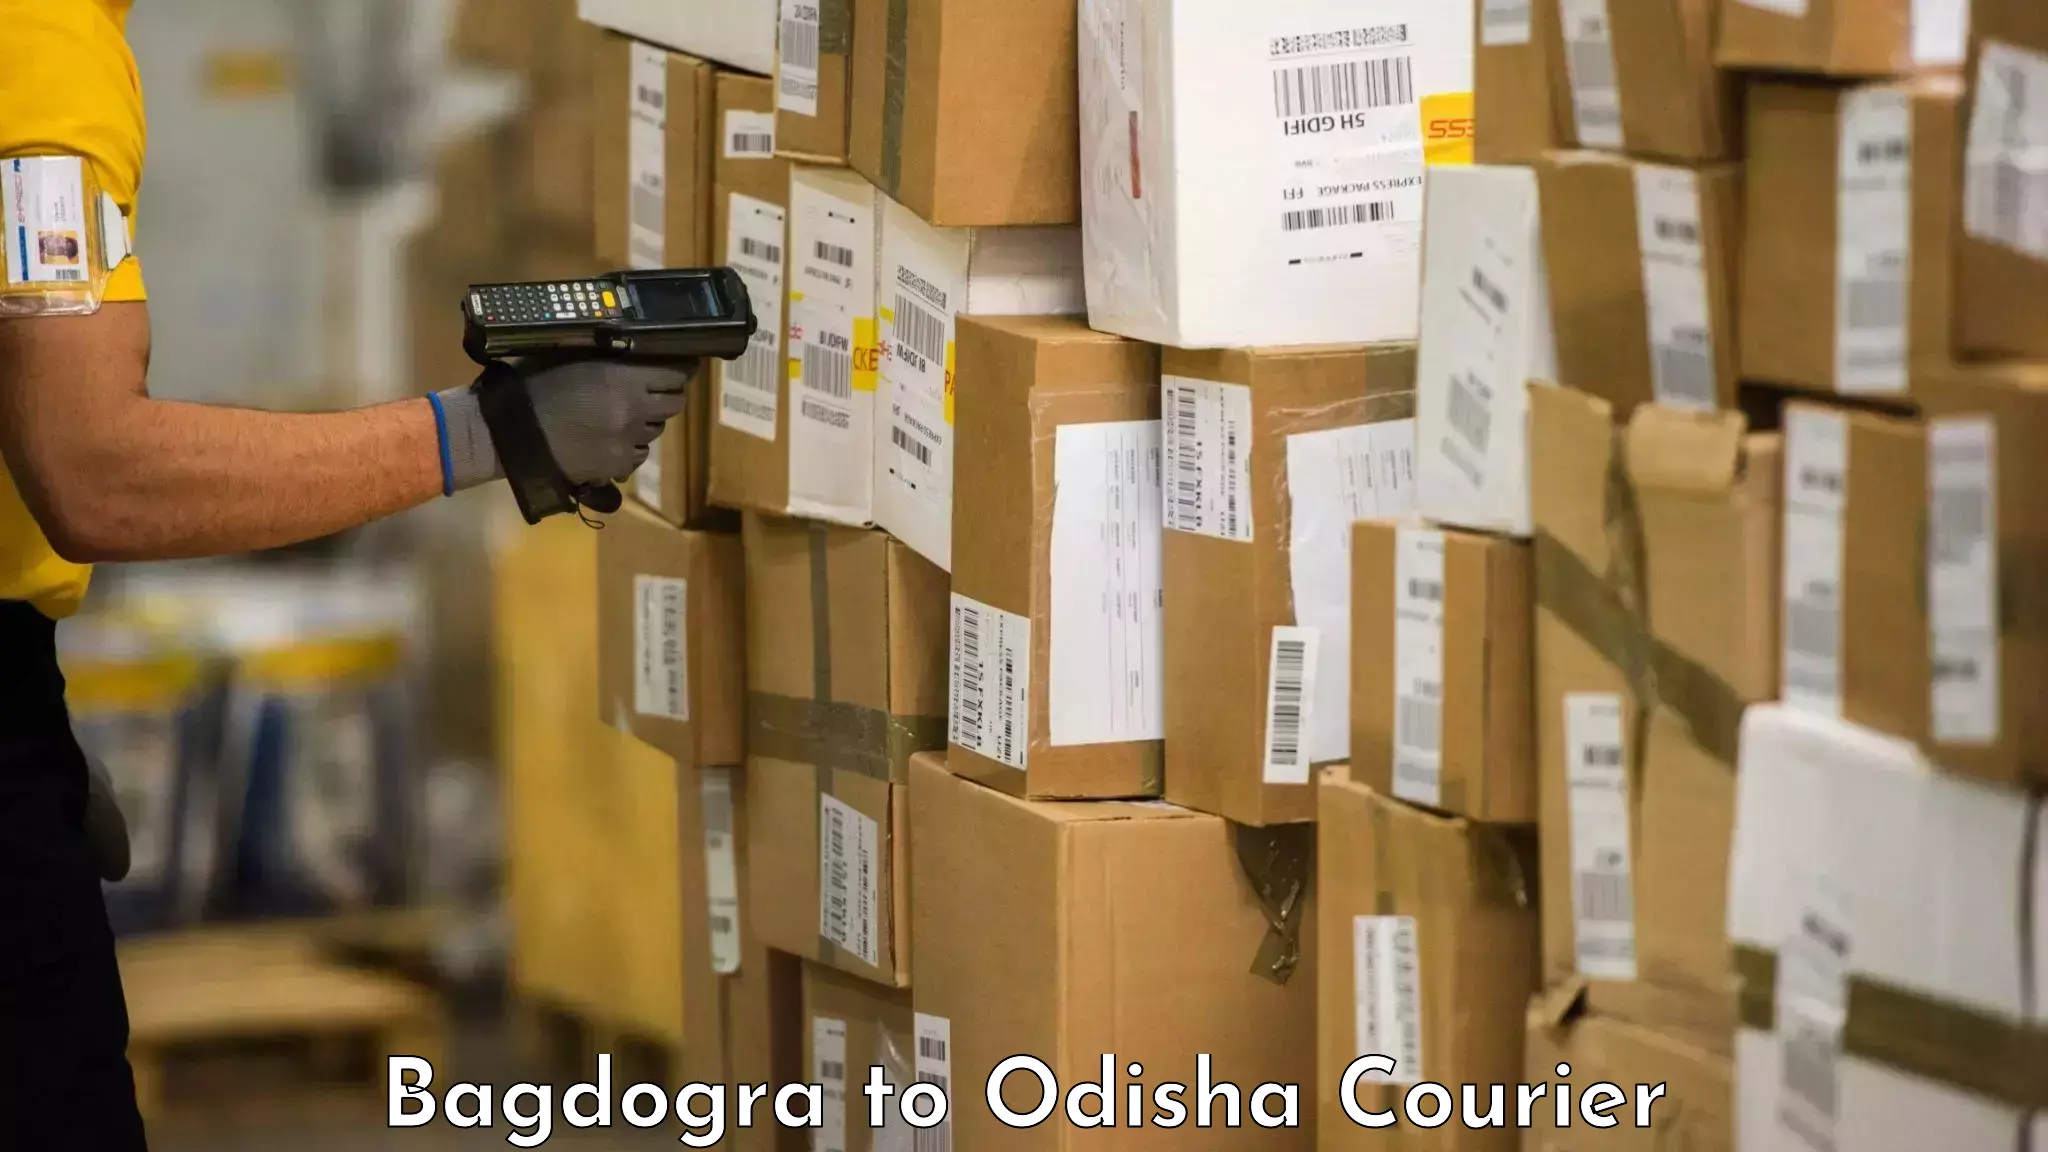 Reliable baggage delivery Bagdogra to Odisha